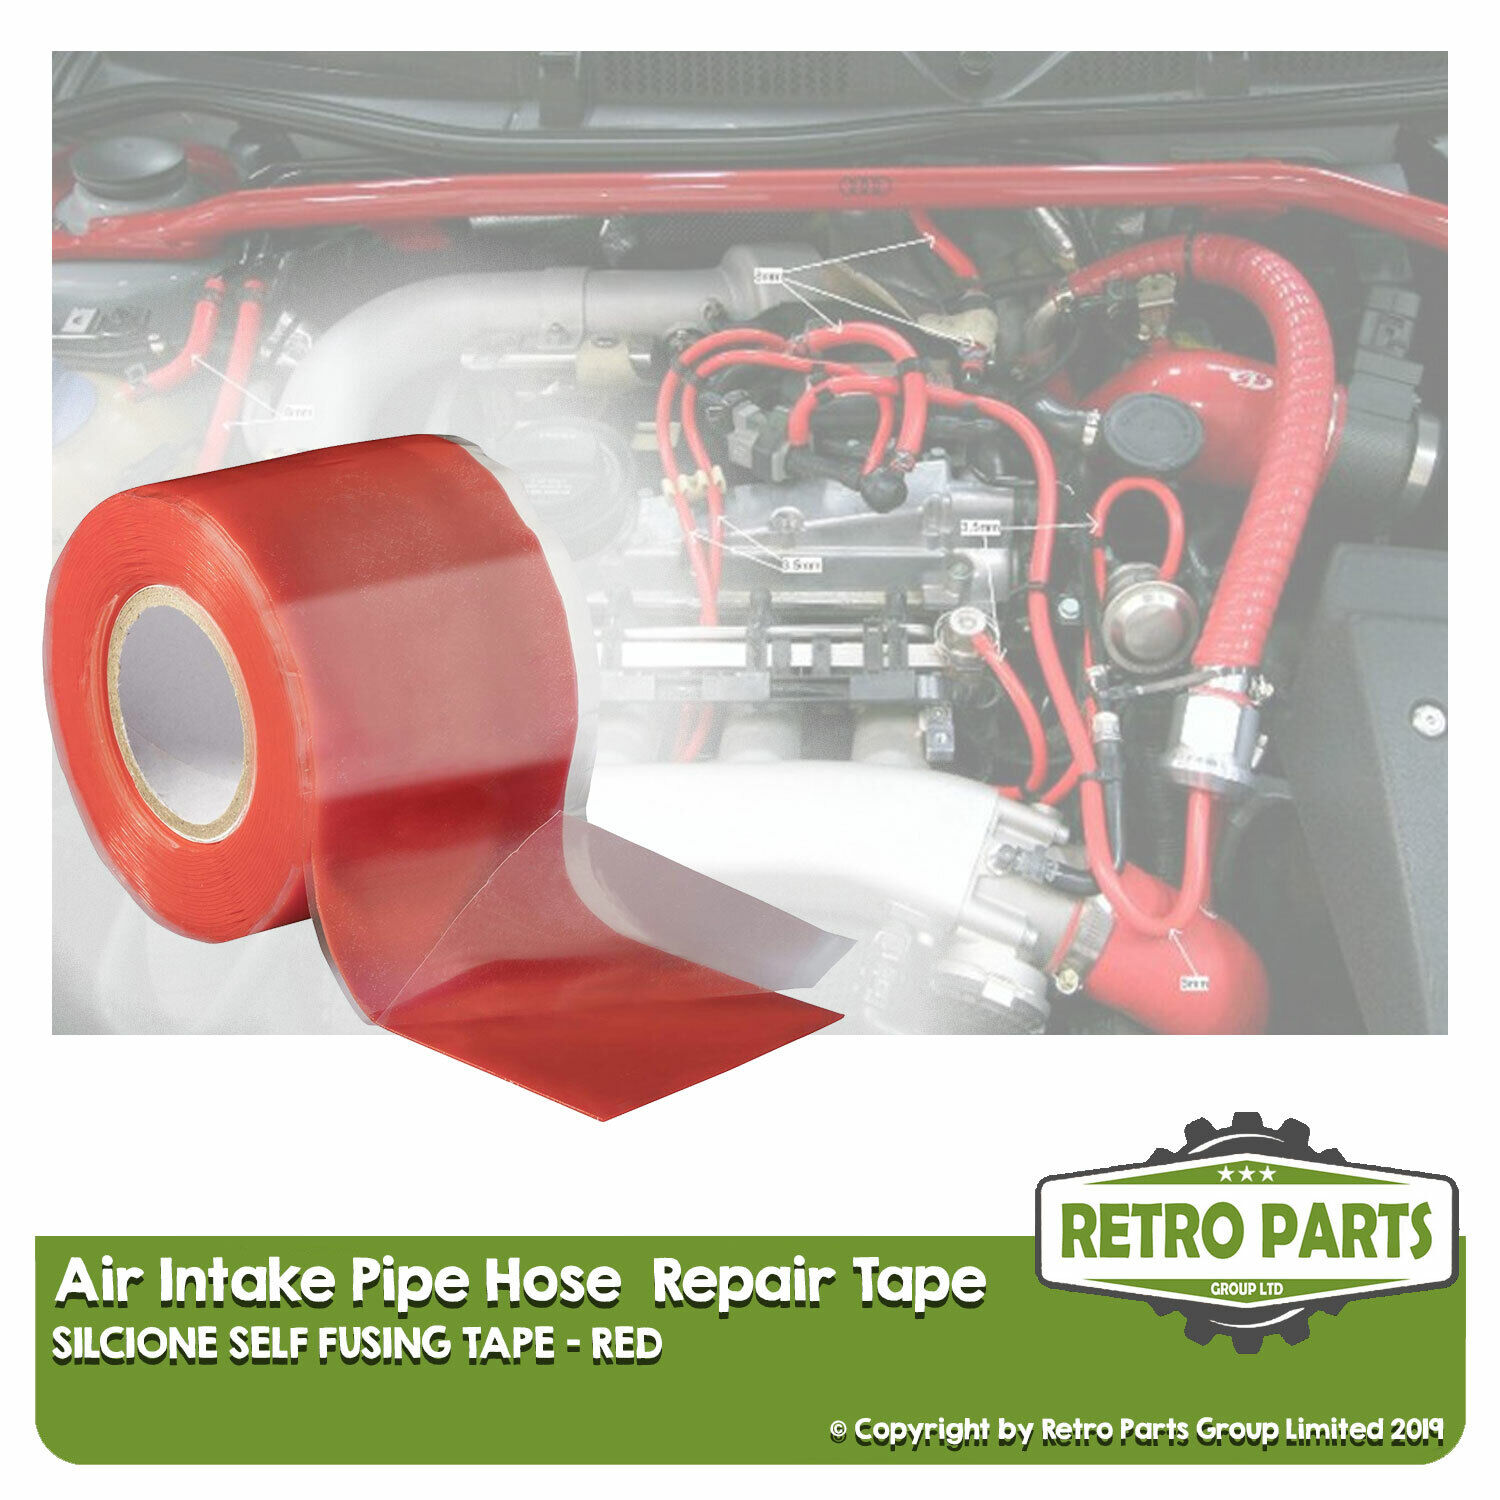 Air Intake Inlet Pipe Hose Repair Tape For Reliant. Leak Fix Seal Red